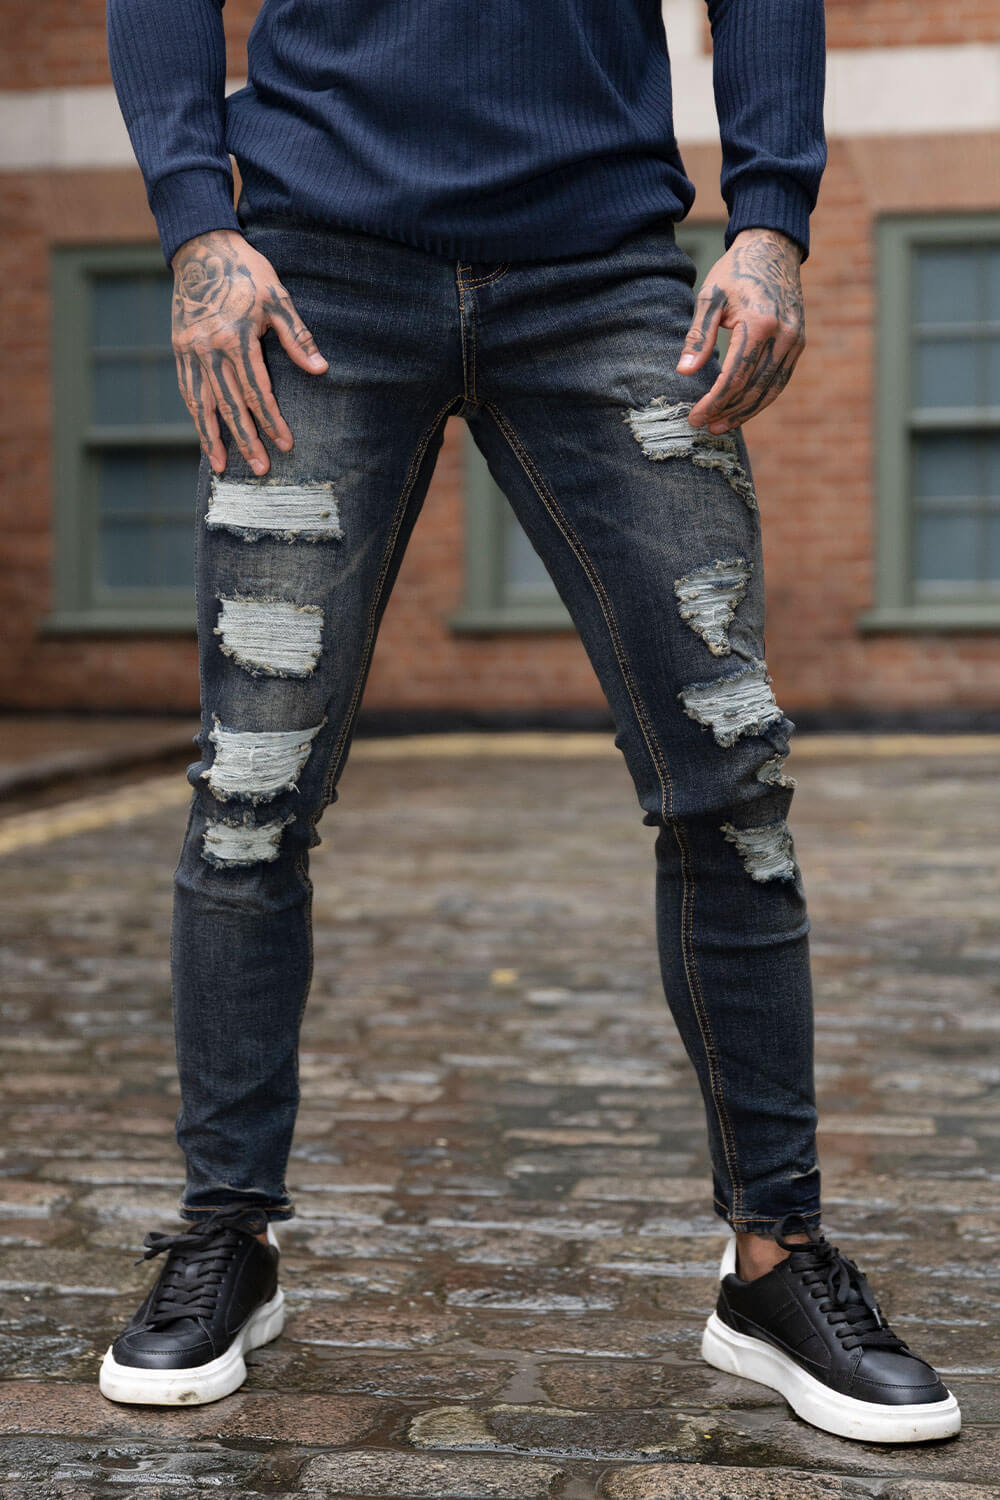 men's jeans slim tapered